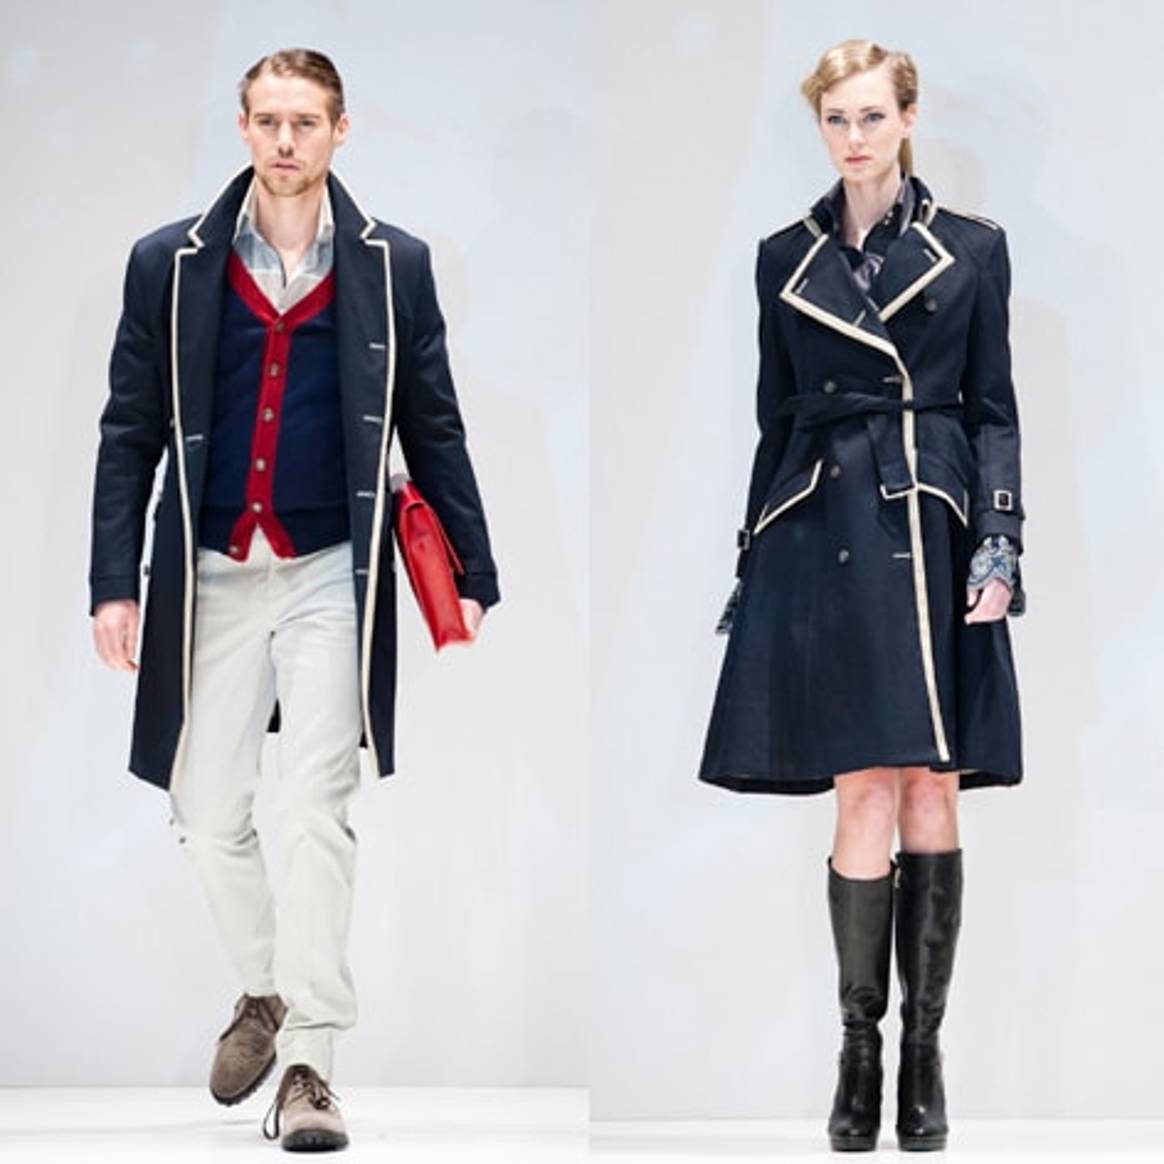 Circle of Gentlemen: trends in een eigen jasje